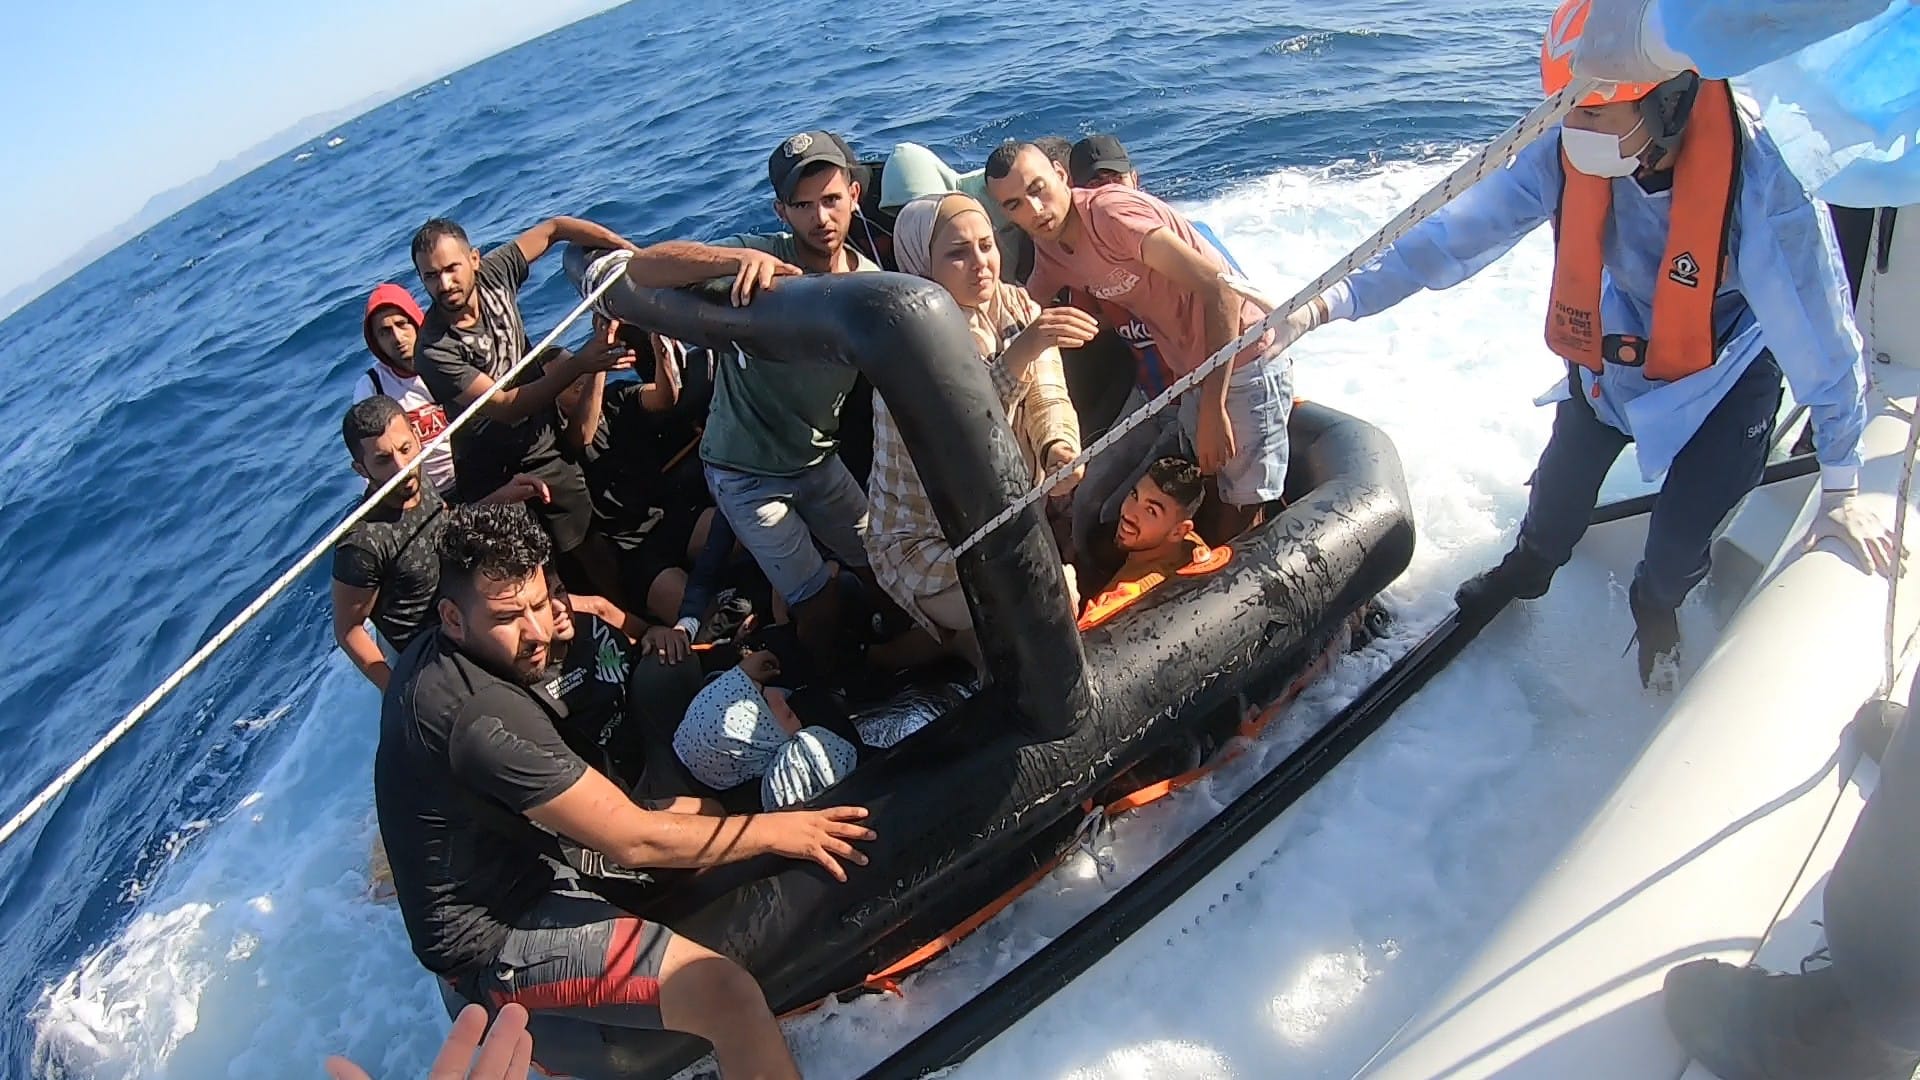 بعد نهبهم. خفر السواحل اليوناني يعيد بالقوة 21 مهاجراً فلسطينياً إلى المياه